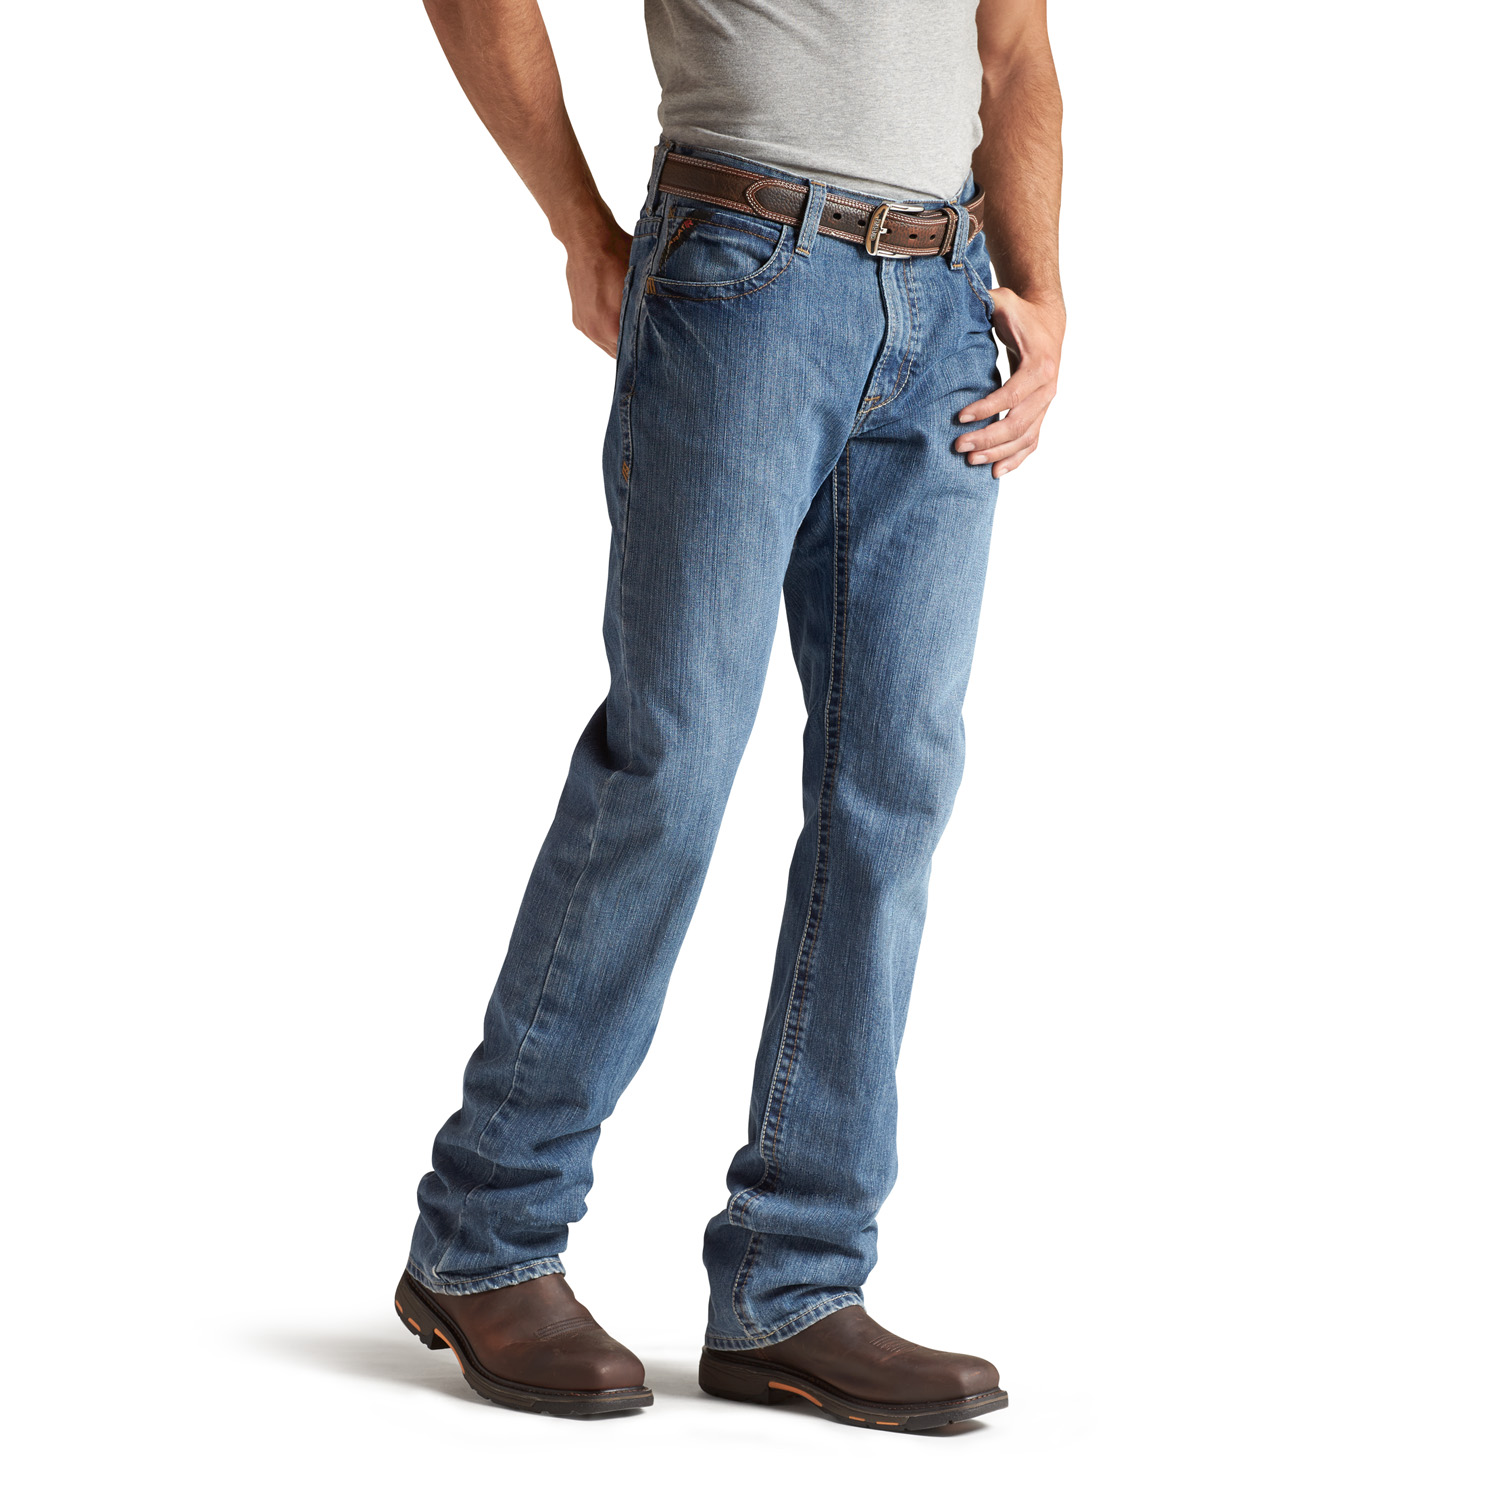 Details about   Titicaca Men's FR Jeans Flame Resistant Low Rise Comfort 11.5oz Cotton Jeans 